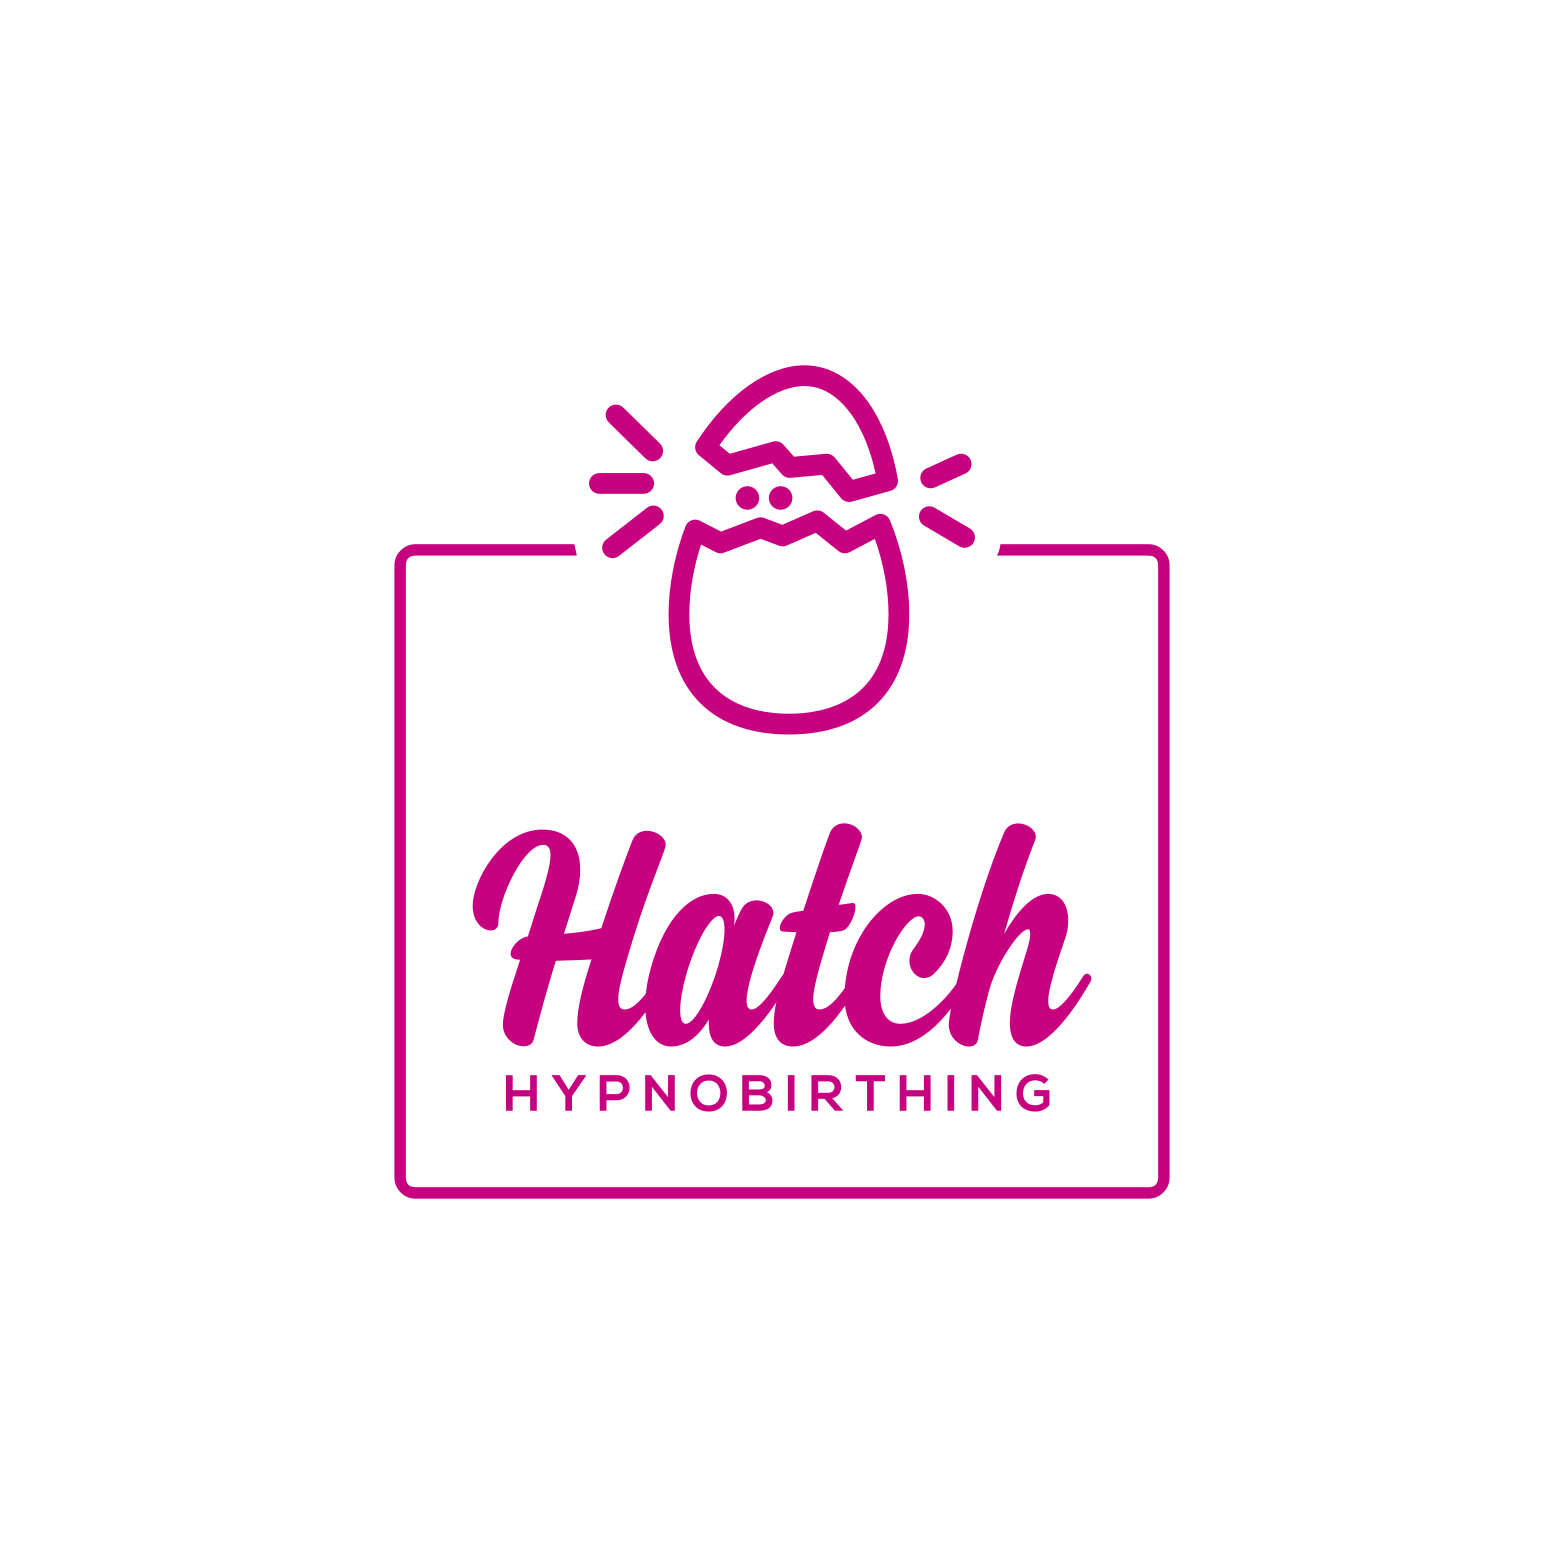 Hatch Hypnobirthing 's logo